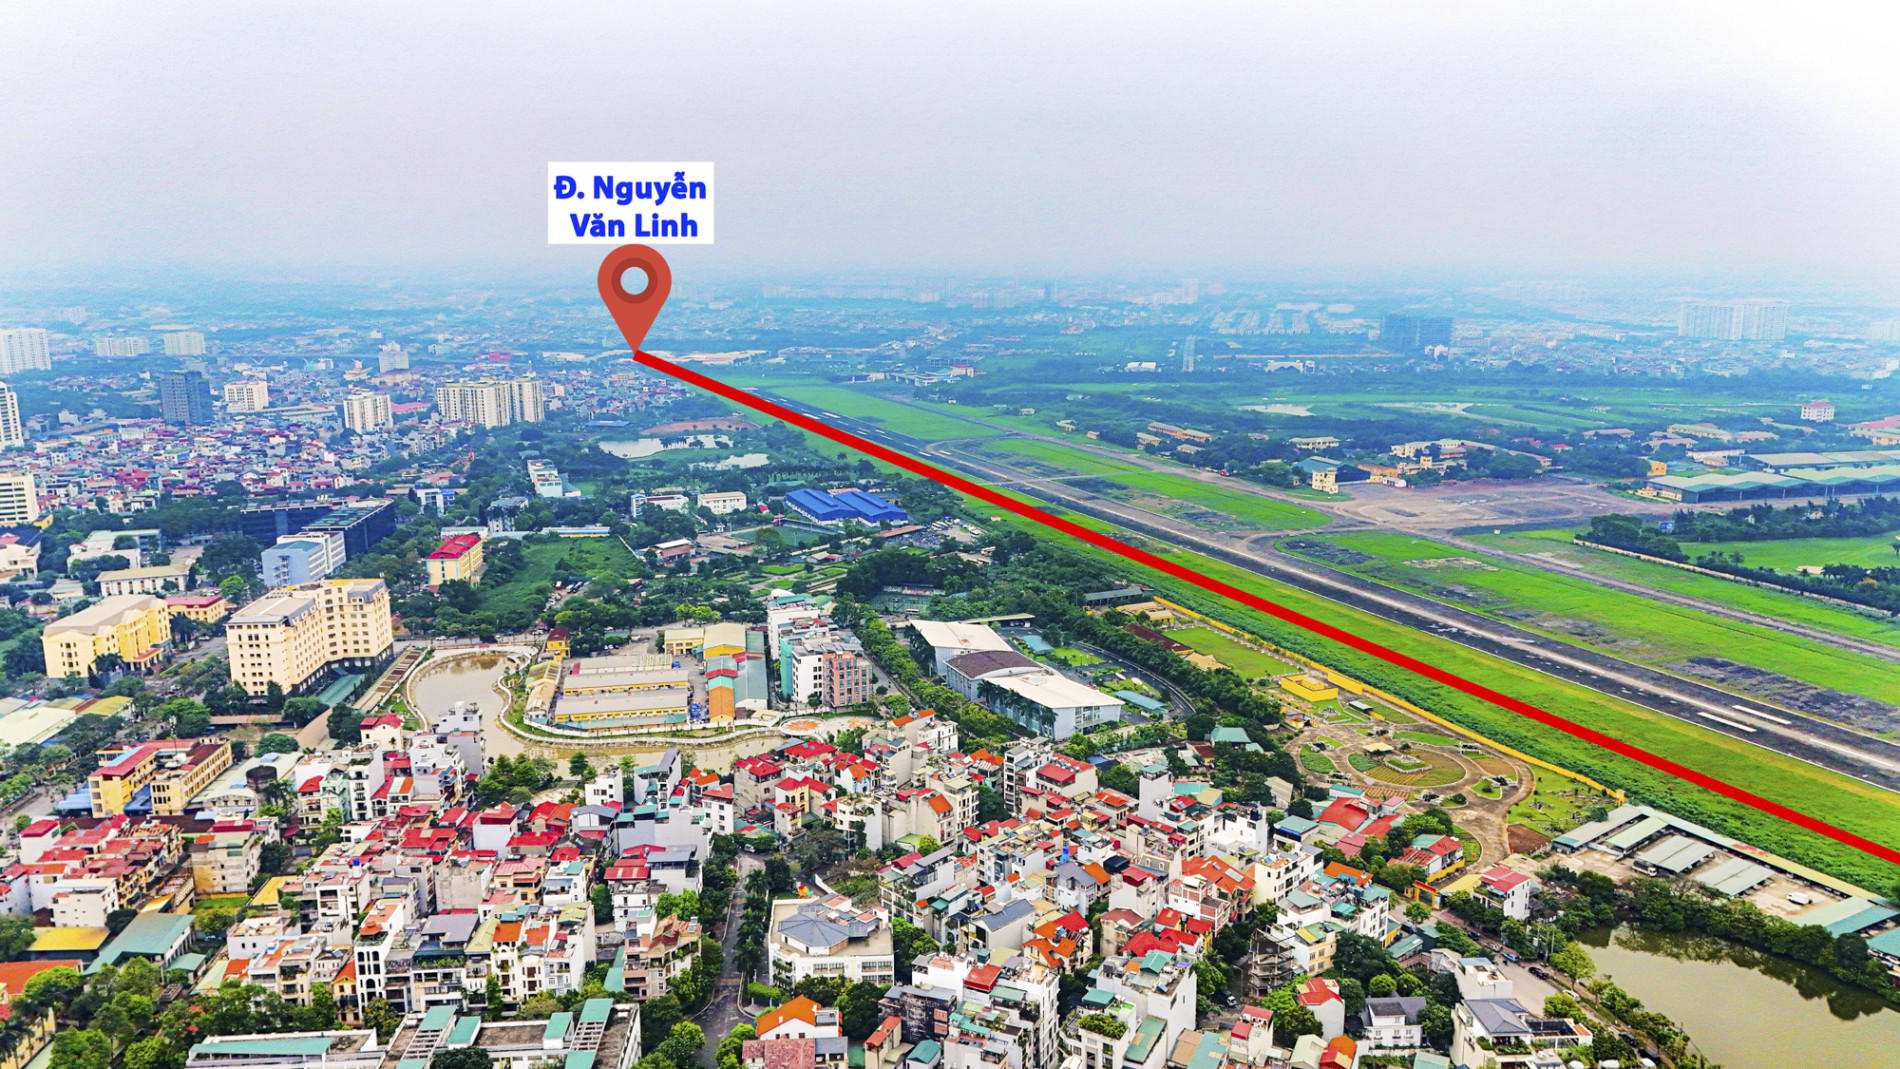 Khu vực chuẩn bị được xây “siêu cầu” 16.000 tỷ, nối 2 quận trung tâm Thủ đô với sân bay- Ảnh 10.